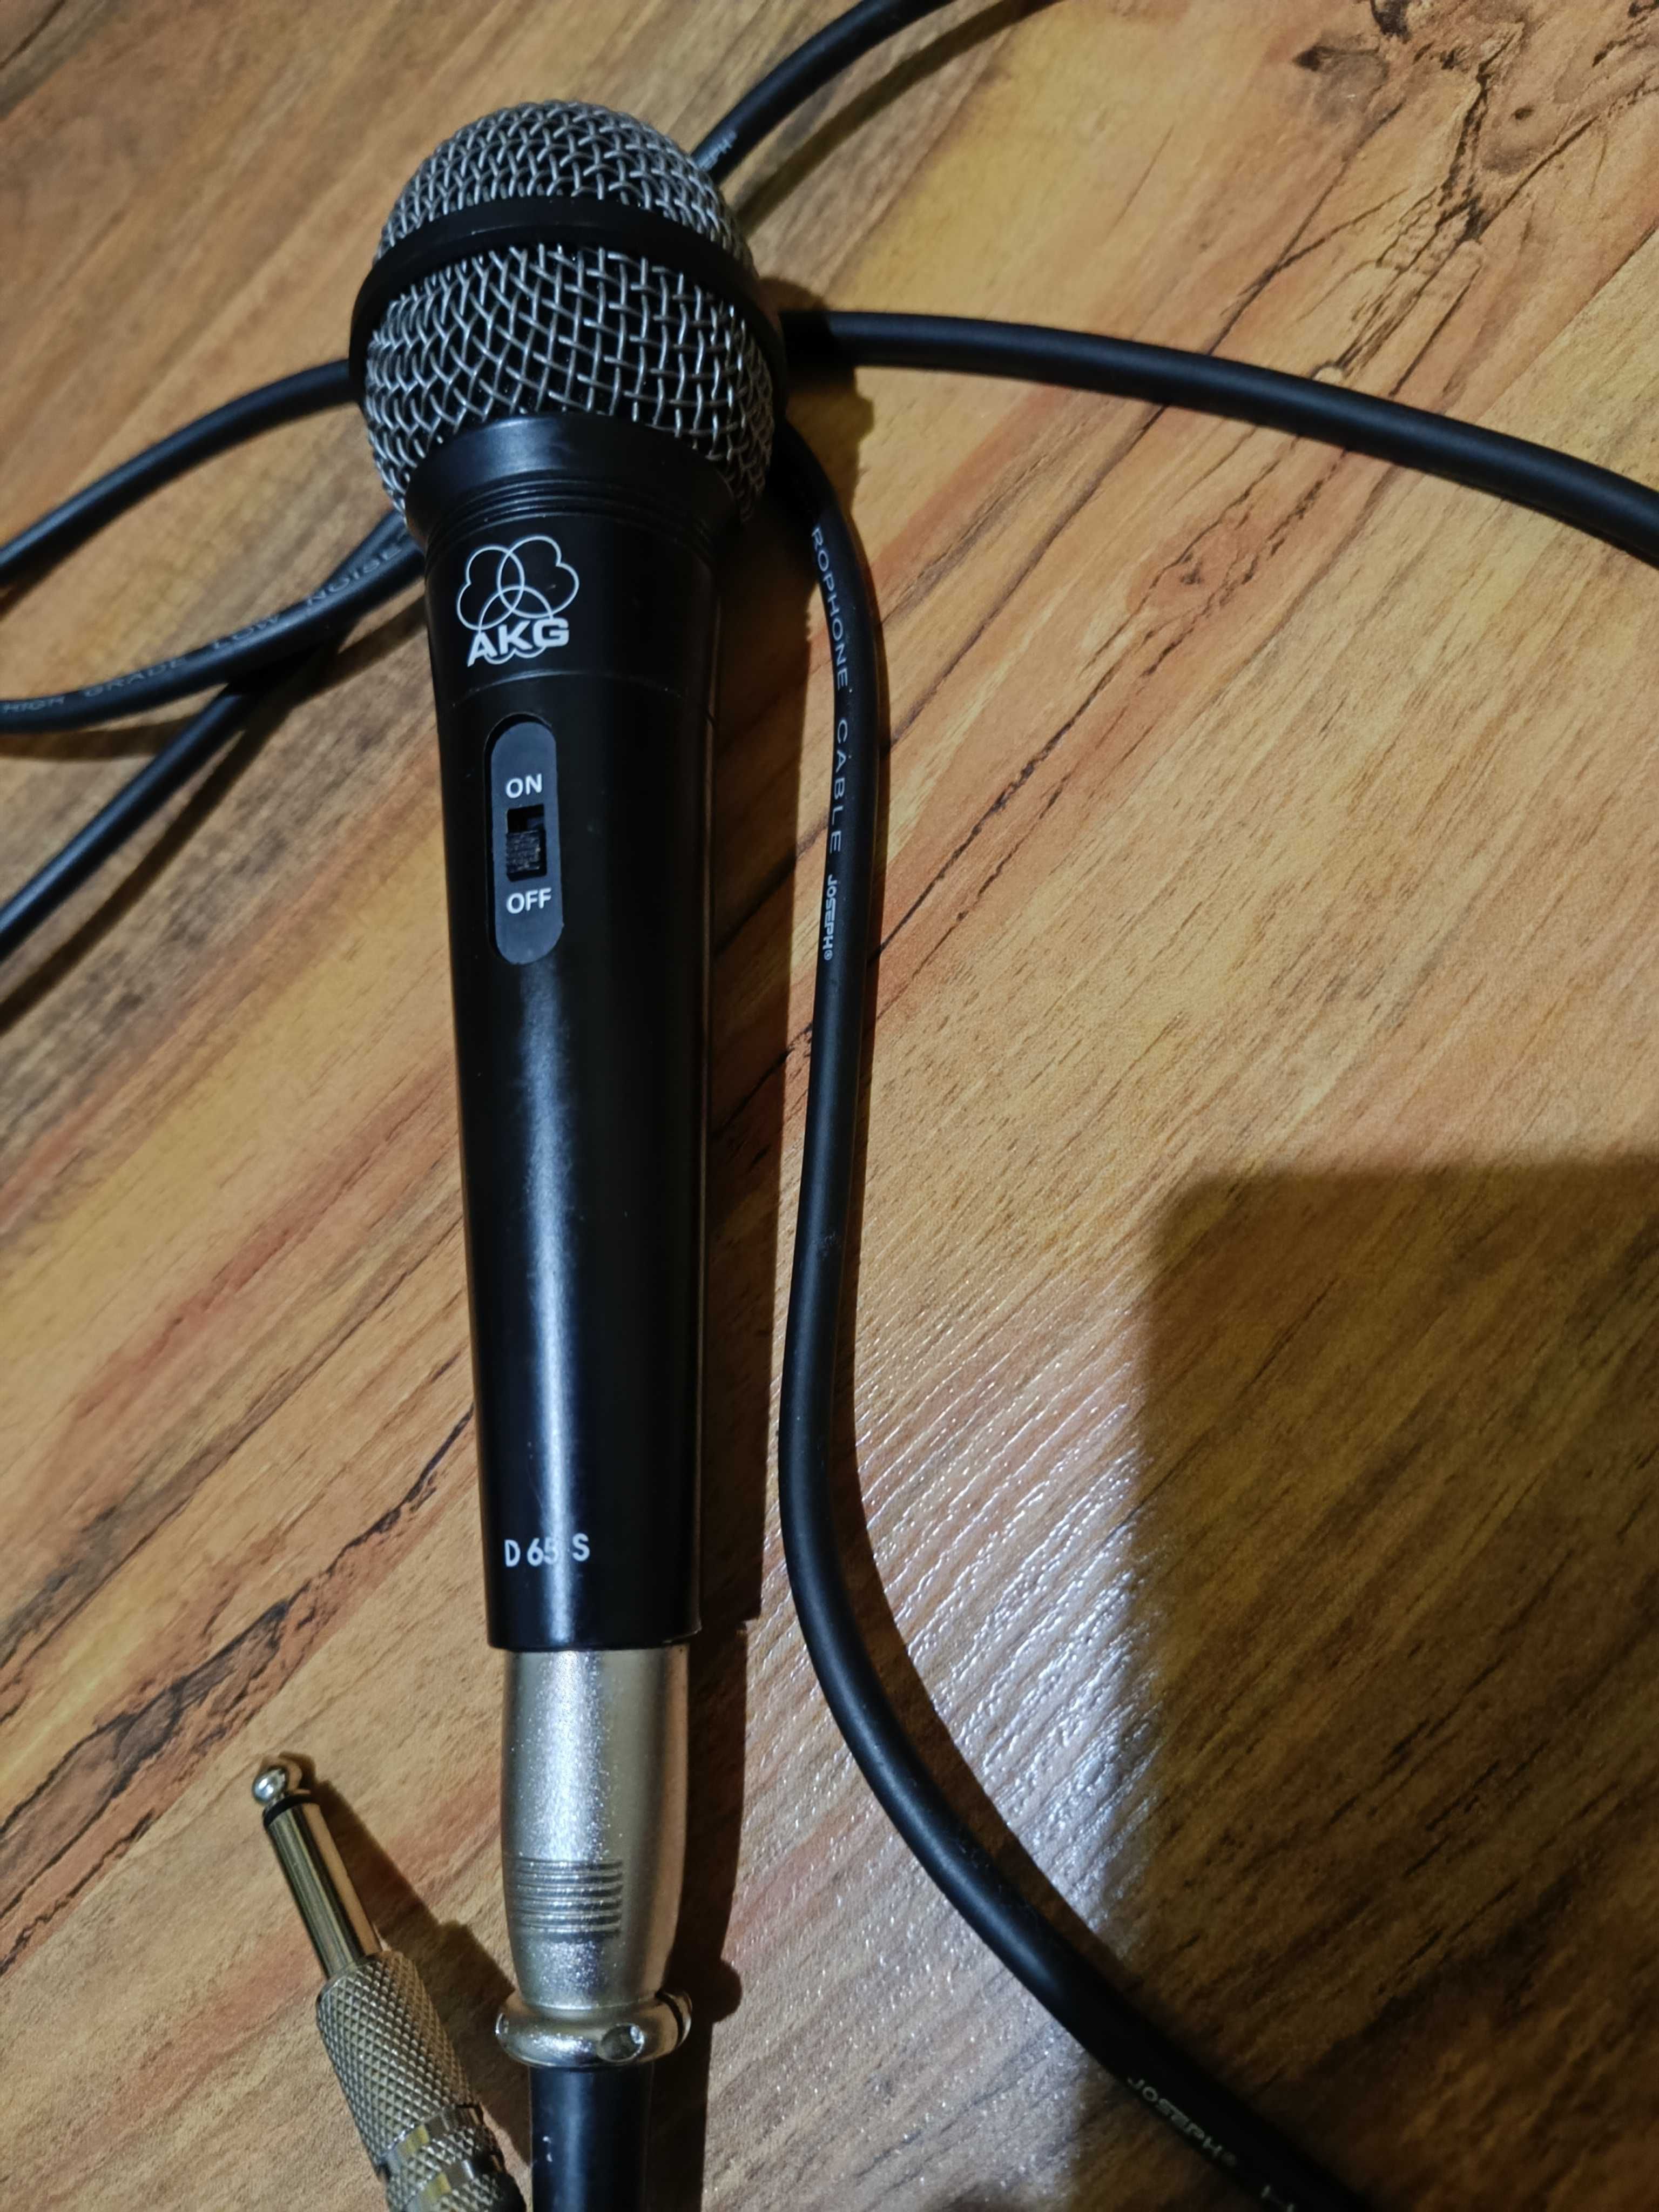 Микрофон AKG d65s АКГ Д 65 С AKG D 65 S Dynamic Cardioid Microphone